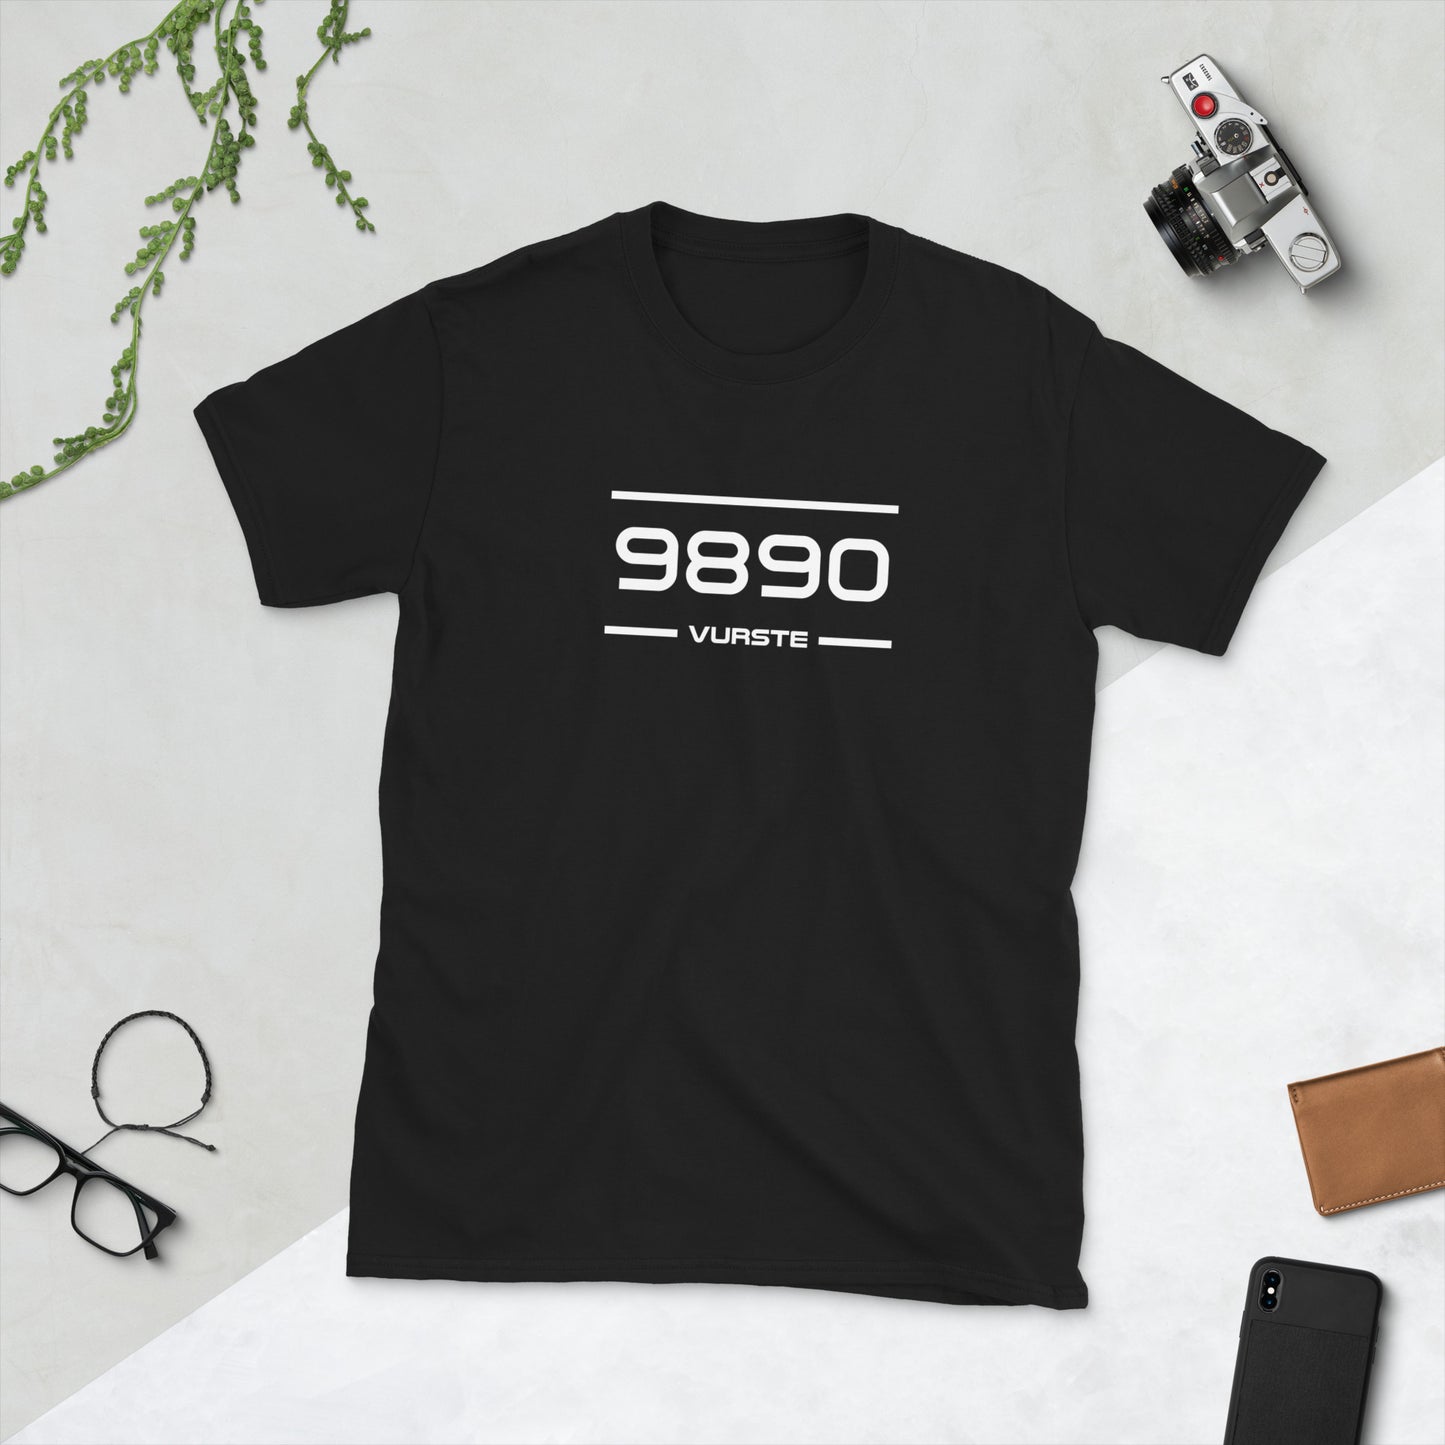 Tshirt - 9890 - Vurste